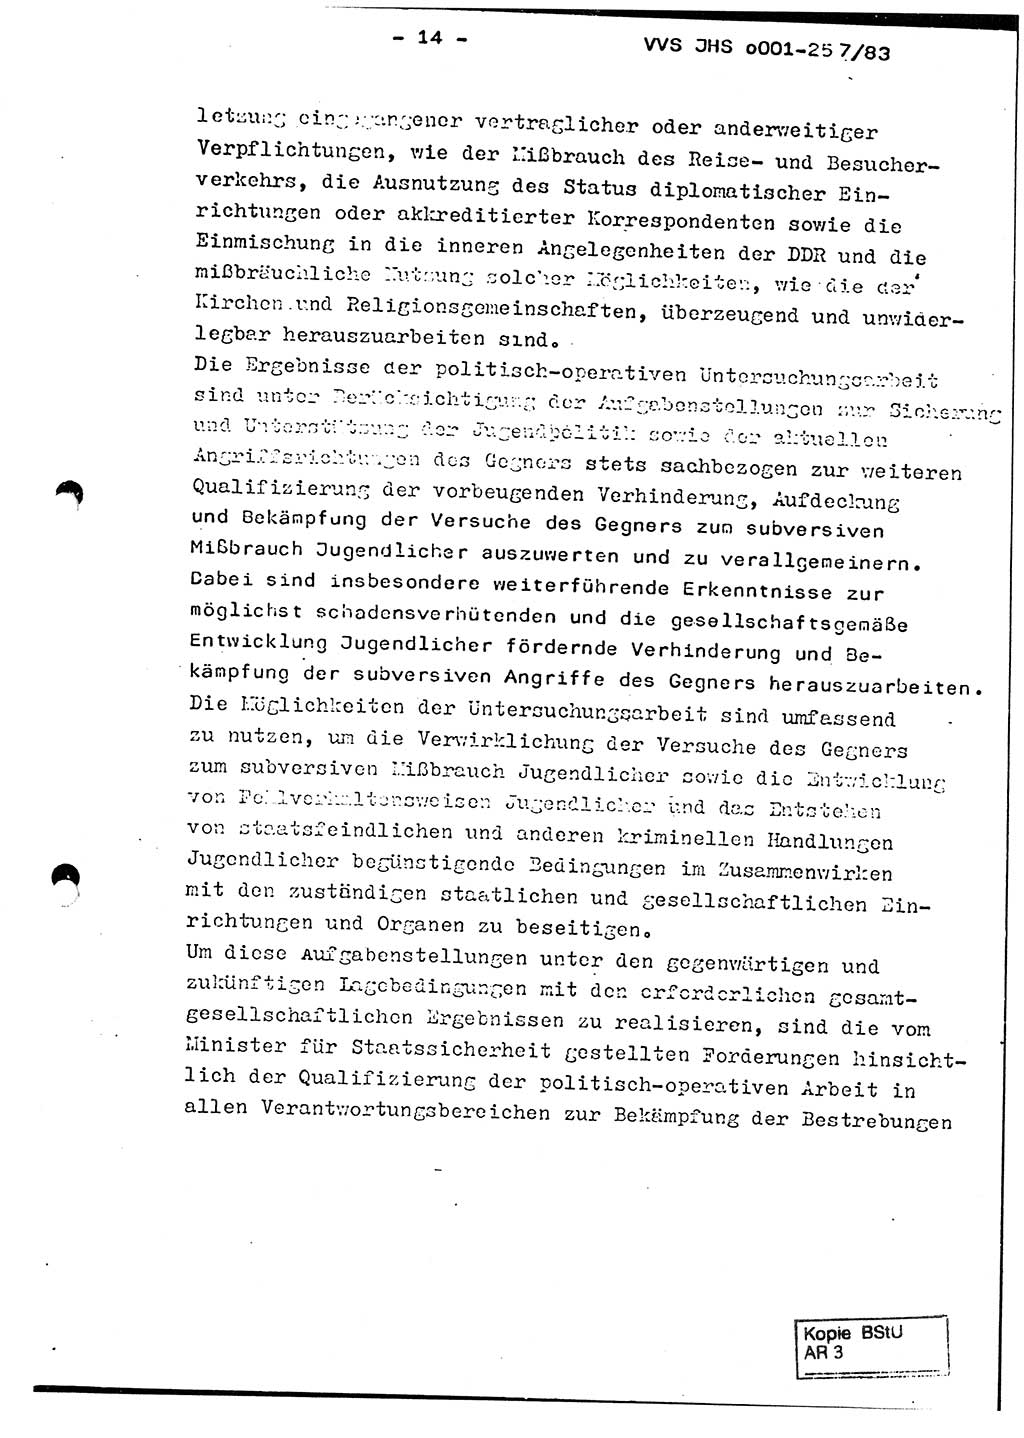 Dissertation, Oberst Helmut Lubas (BV Mdg.), Oberstleutnant Manfred Eschberger (HA IX), Oberleutnant Hans-Jürgen Ludwig (JHS), Ministerium für Staatssicherheit (MfS) [Deutsche Demokratische Republik (DDR)], Juristische Hochschule (JHS), Vertrauliche Verschlußsache (VVS) o001-257/83, Potsdam 1983, Seite 14 (Diss. MfS DDR JHS VVS o001-257/83 1983, S. 14)